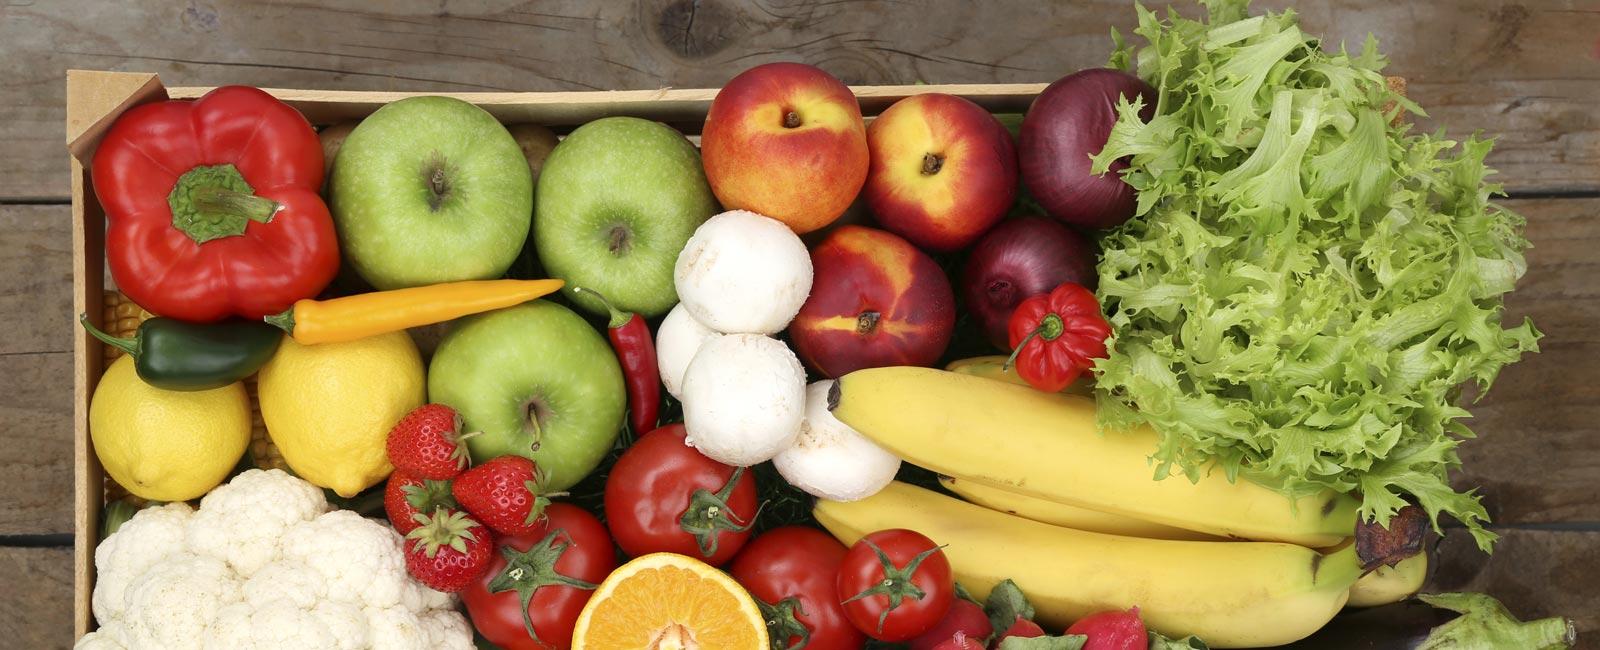 Fruits Solé – Falcó 21 canasta con frutas